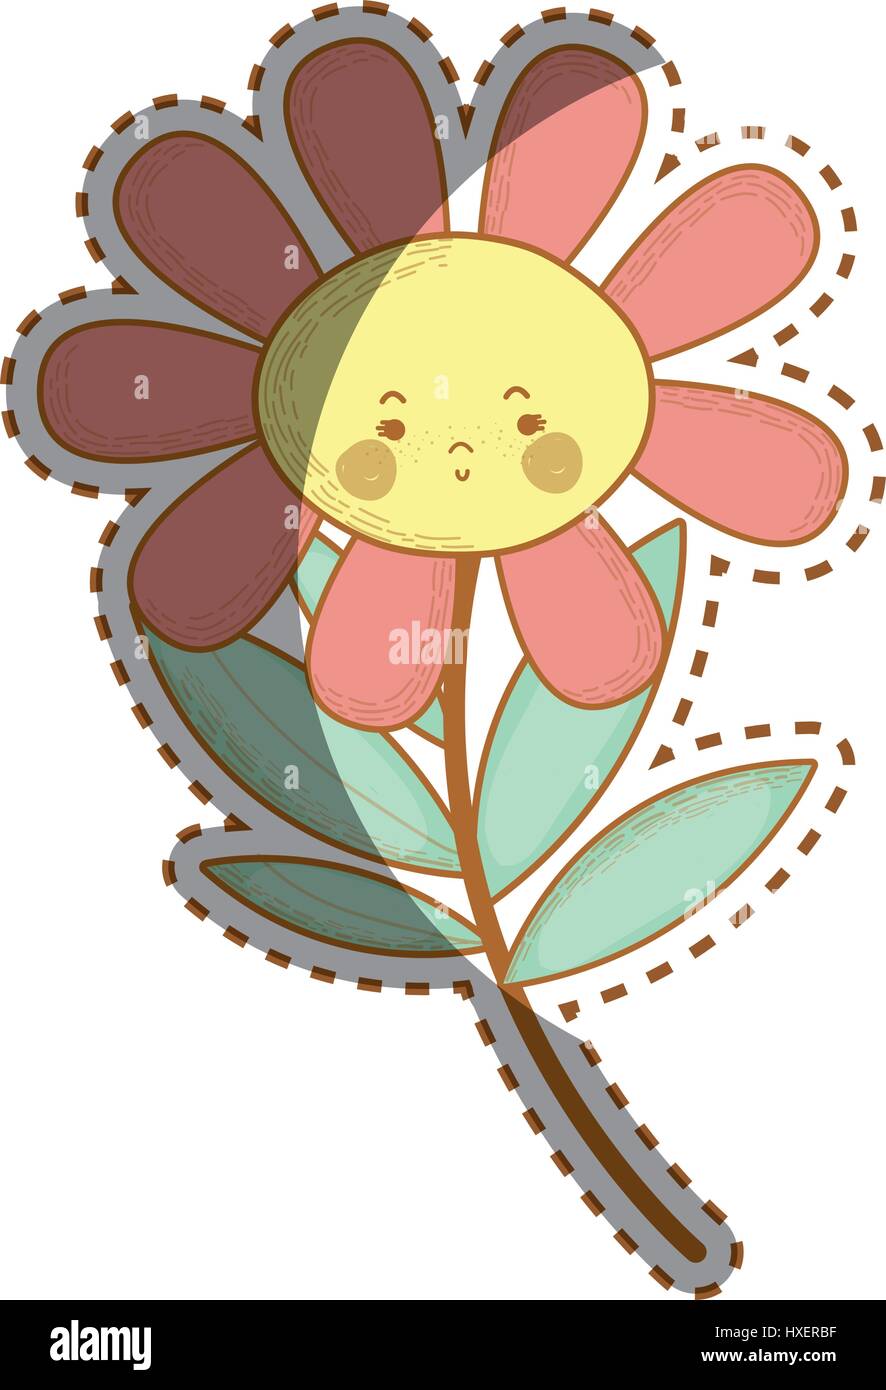 Kawaii traurige Blume Pflanze mit Wangen und Mund Stock-Vektorgrafik - Alamy